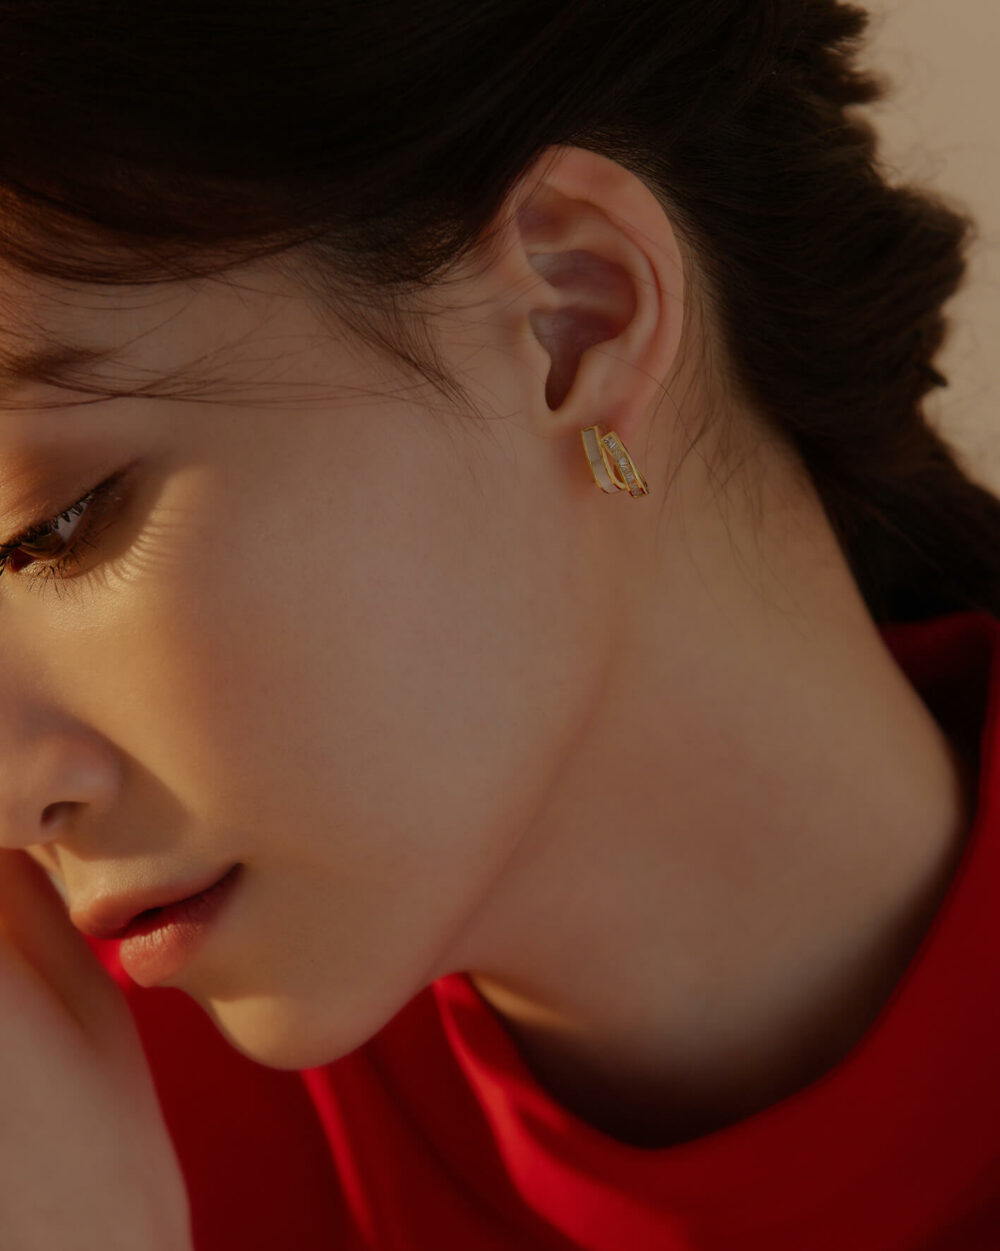 Eco安珂,韓國飾品,韓國耳環,純銀耳針,矽膠夾耳環,透明耳夾耳環,無痛耳夾耳環,珠貝耳環